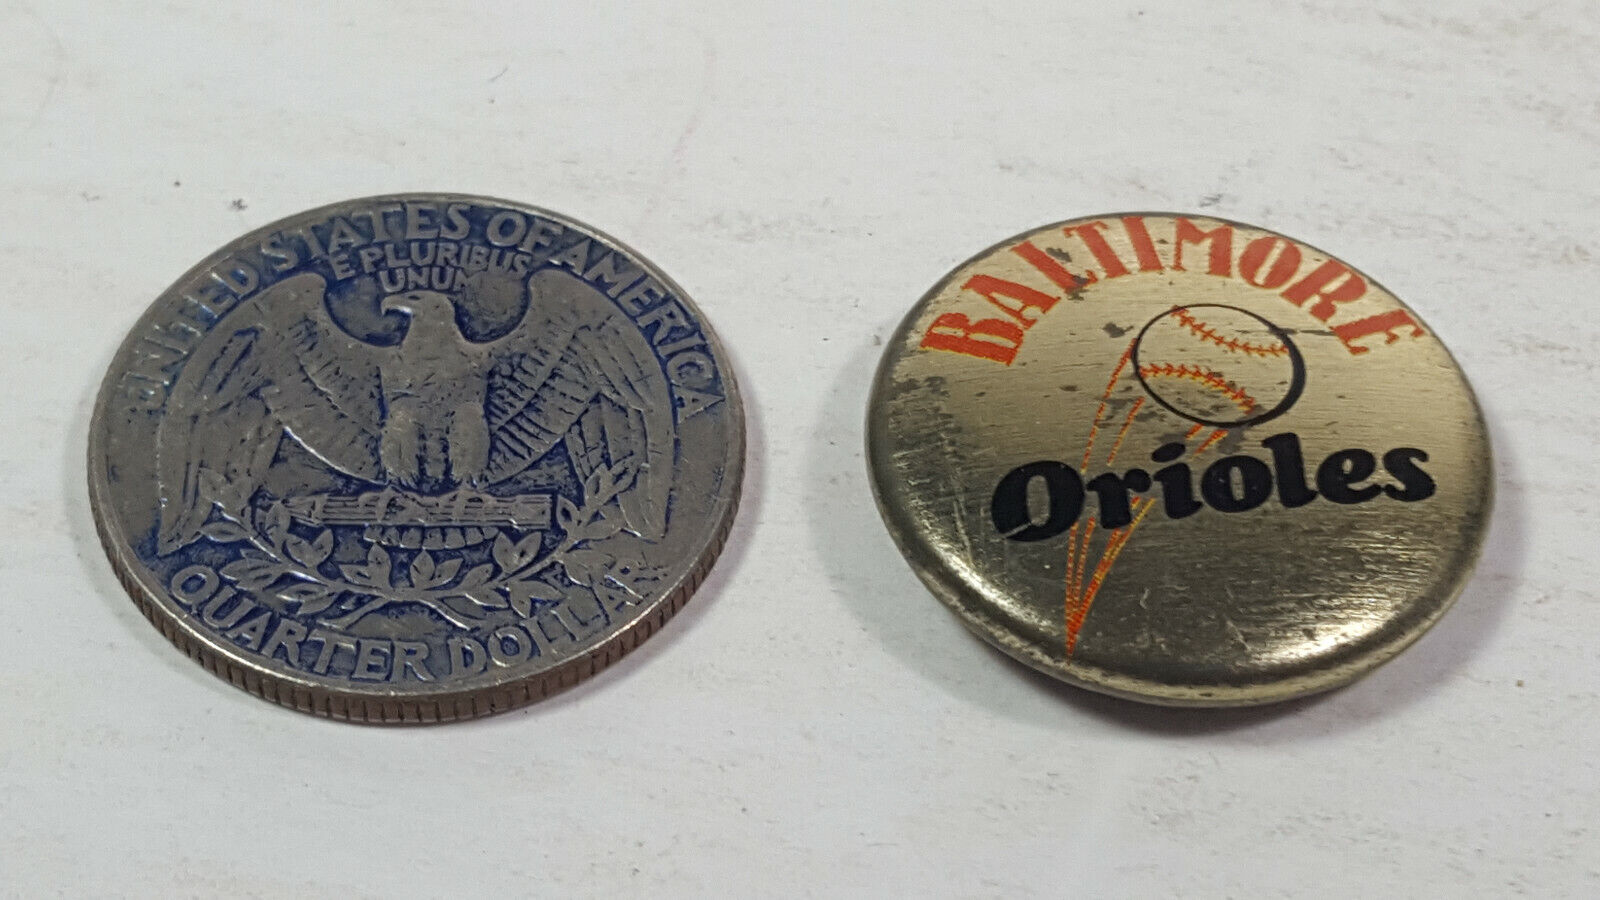 1986 Baltimore Orioles MLB Crane Potato Chips Pinback Collectible Pin Rare Vtg